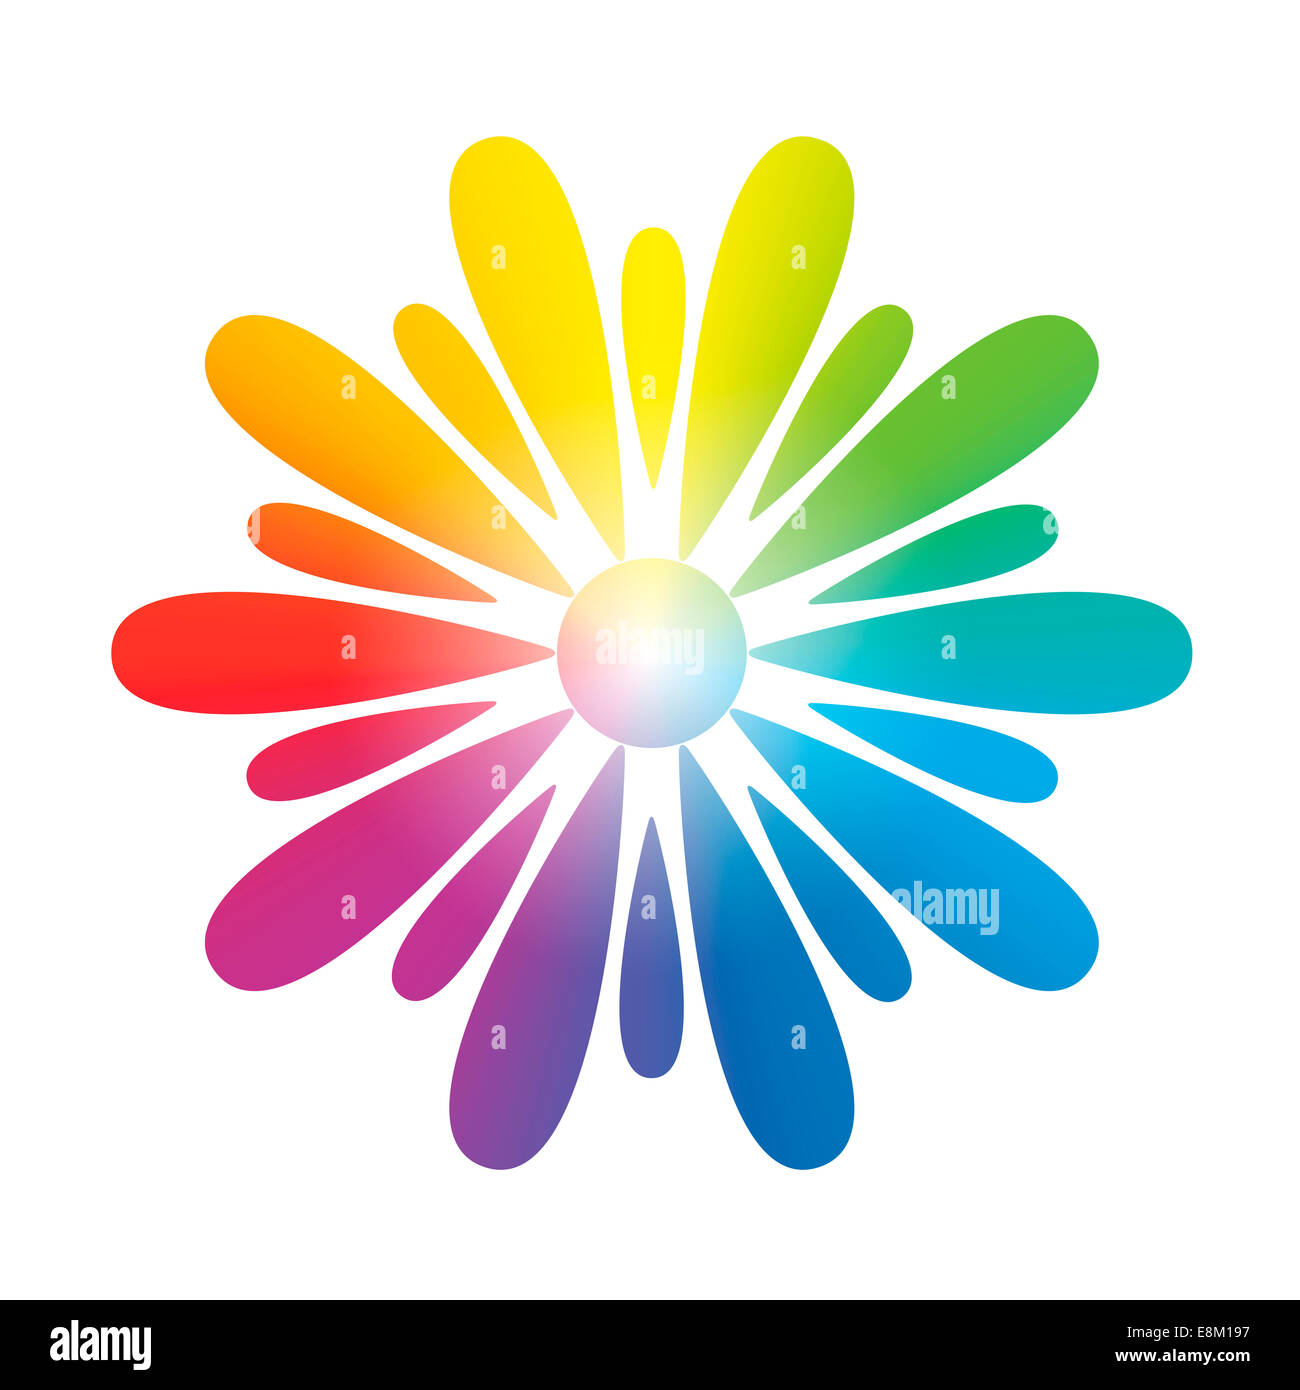 Symbolblume mit kreisförmigen Regenbogen Verlaufsfarben. Stockfoto